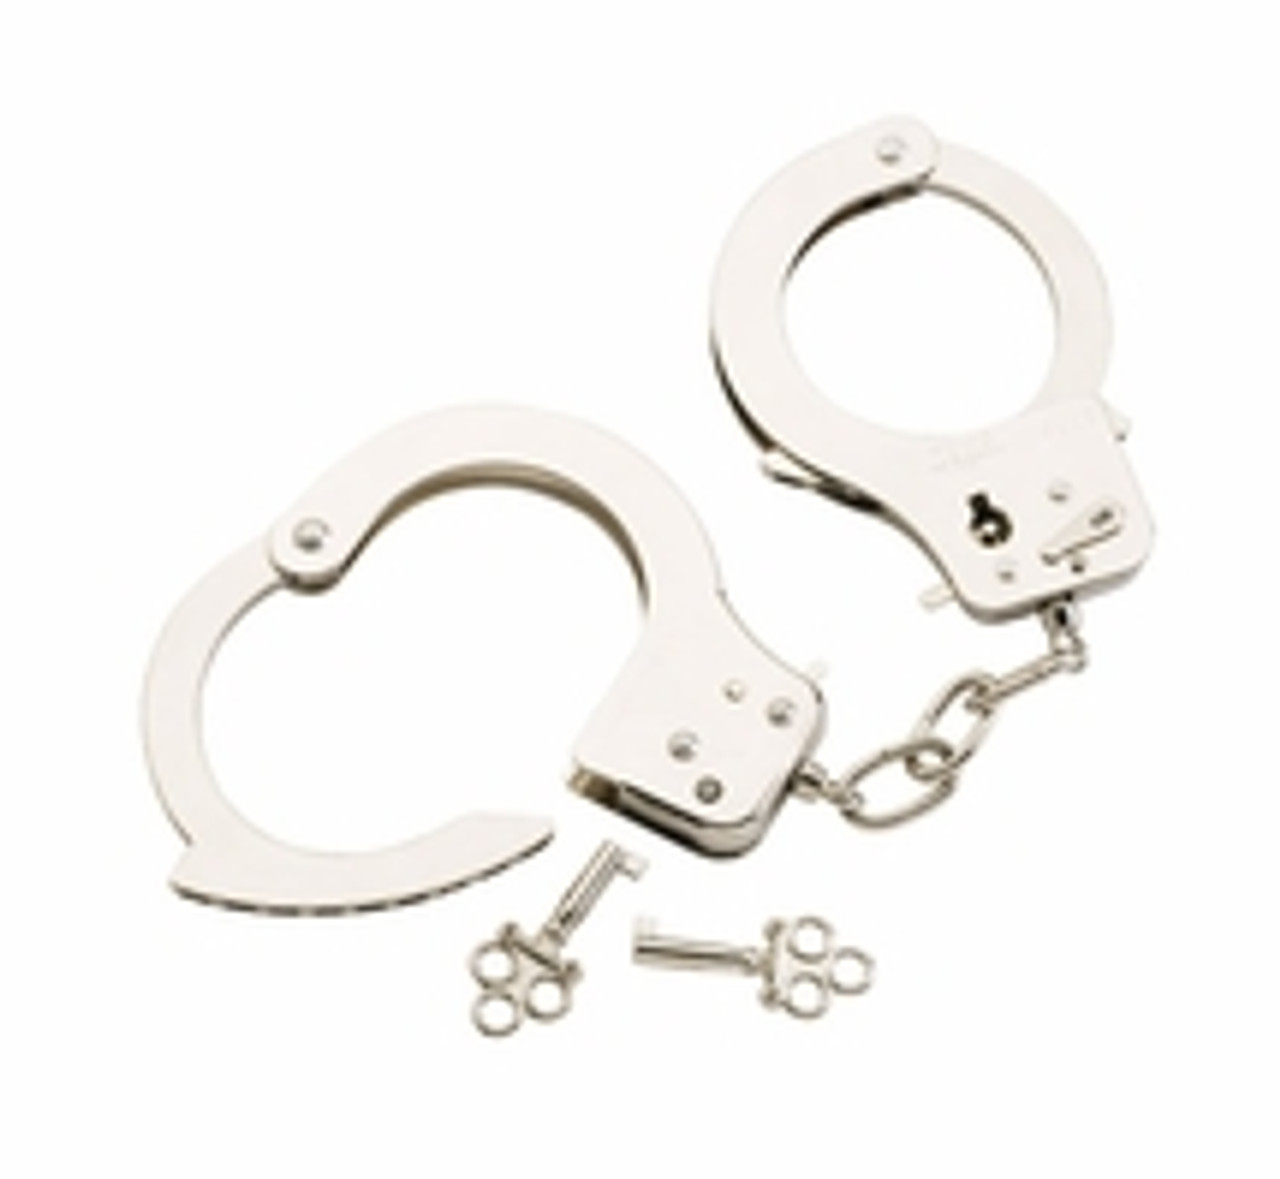 novelty handcuffs